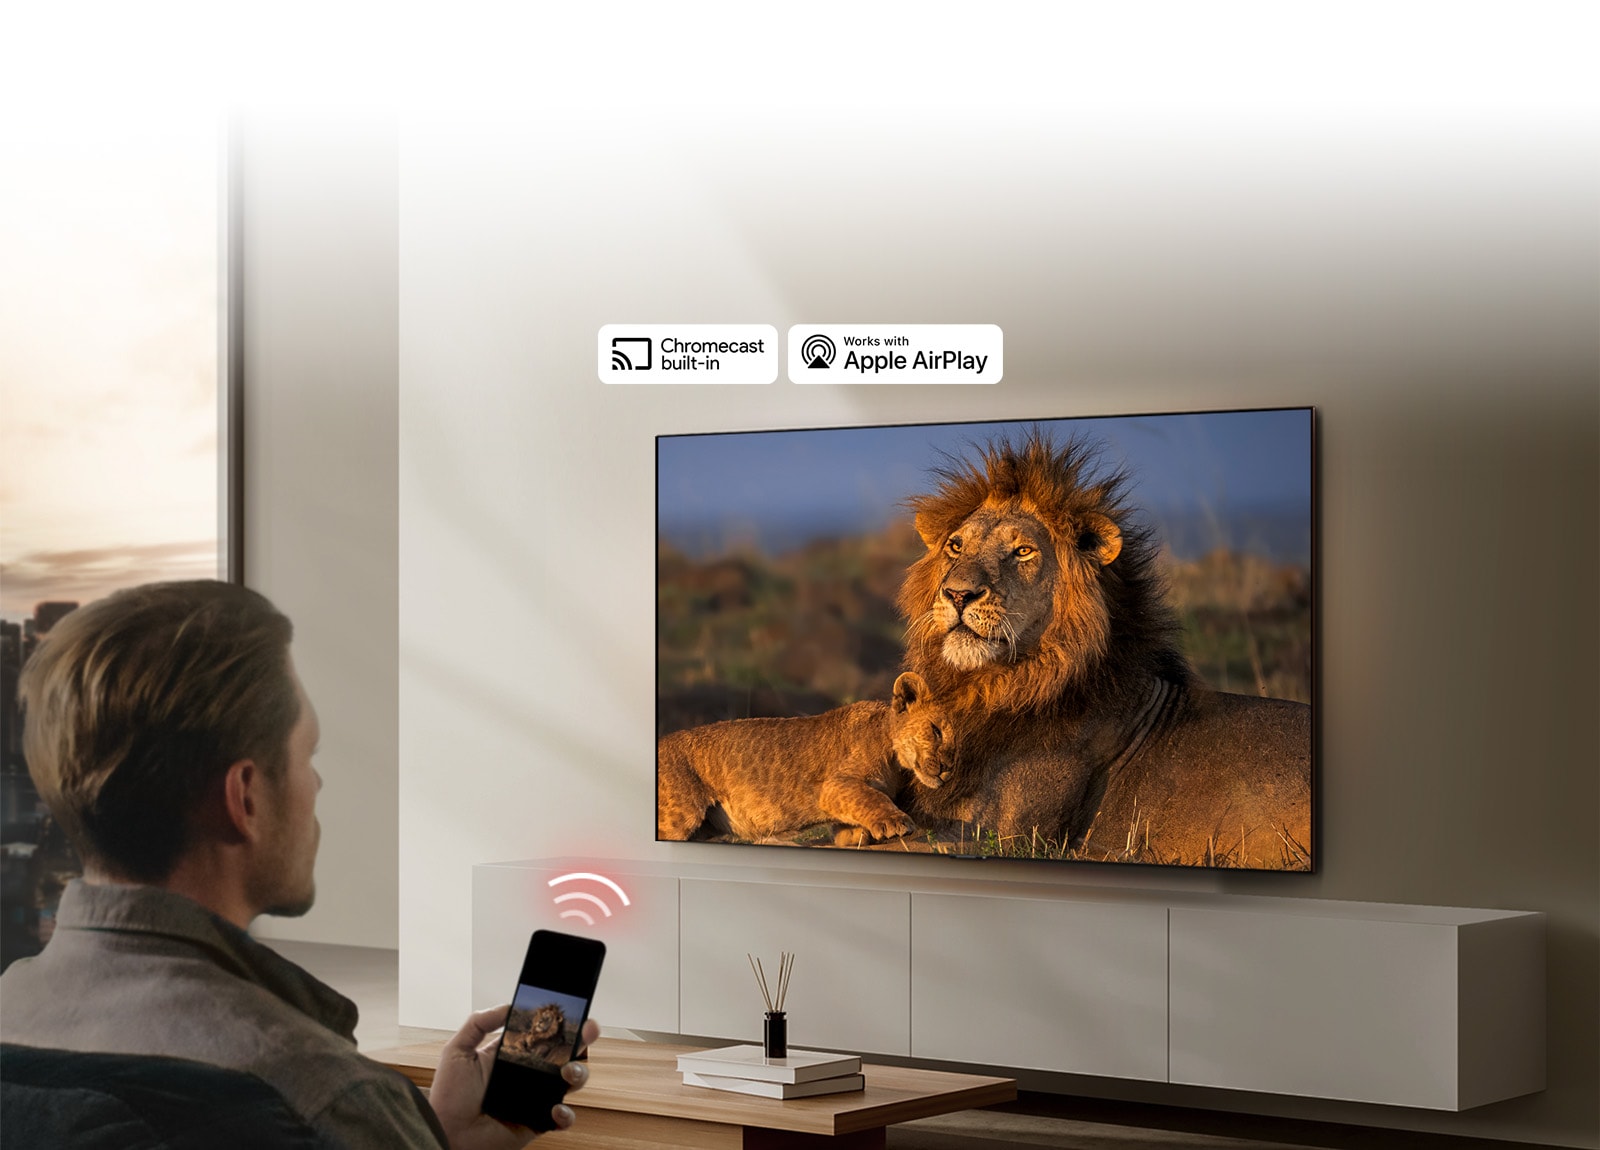 Televízor LG TV je namontovaný na stene v obývacej izbe a zobrazuje leva s levíčaťom. V popredí sedí muž so smartfónom v ruke, na ktorom sa zobrazuje rovnaký obrázok levov. Tesne nad smartfónom sa zobrazuje grafika troch neónových červených zakrivených pruhov, ktoré smerujú k televízoru.